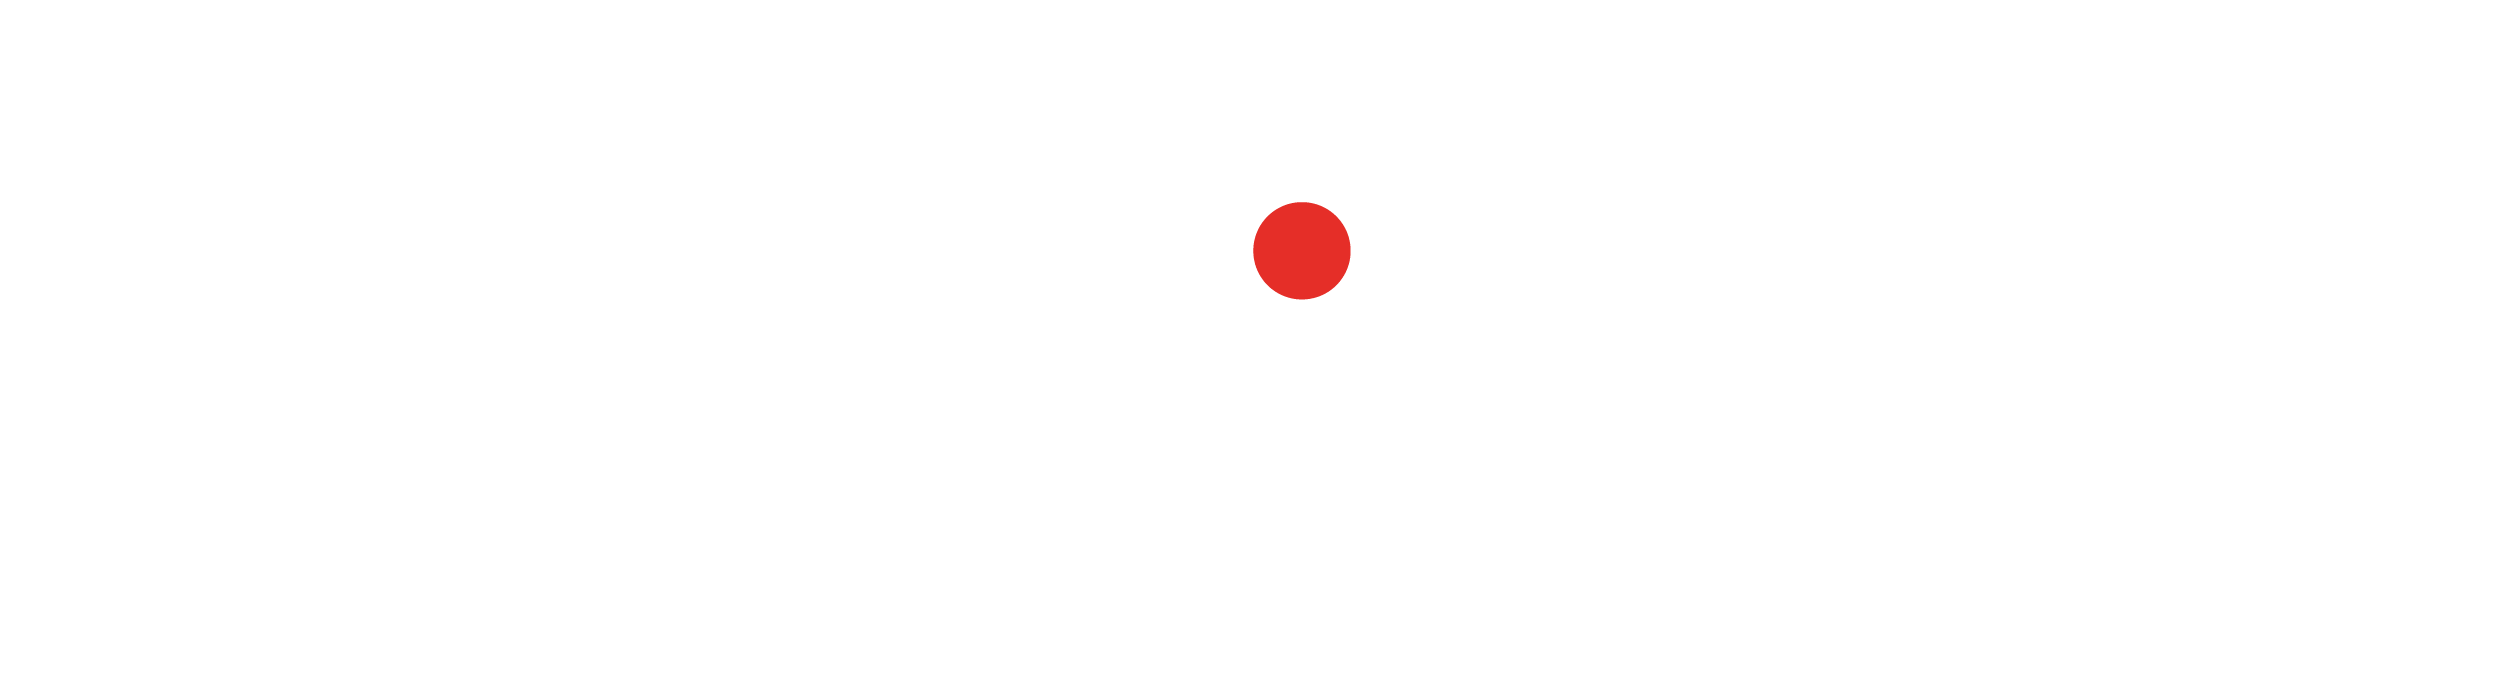 Logo du Groupe Innovia sur fond noir, symbolisant une marque leader dans les solutions de transport et logistique personnalisées.